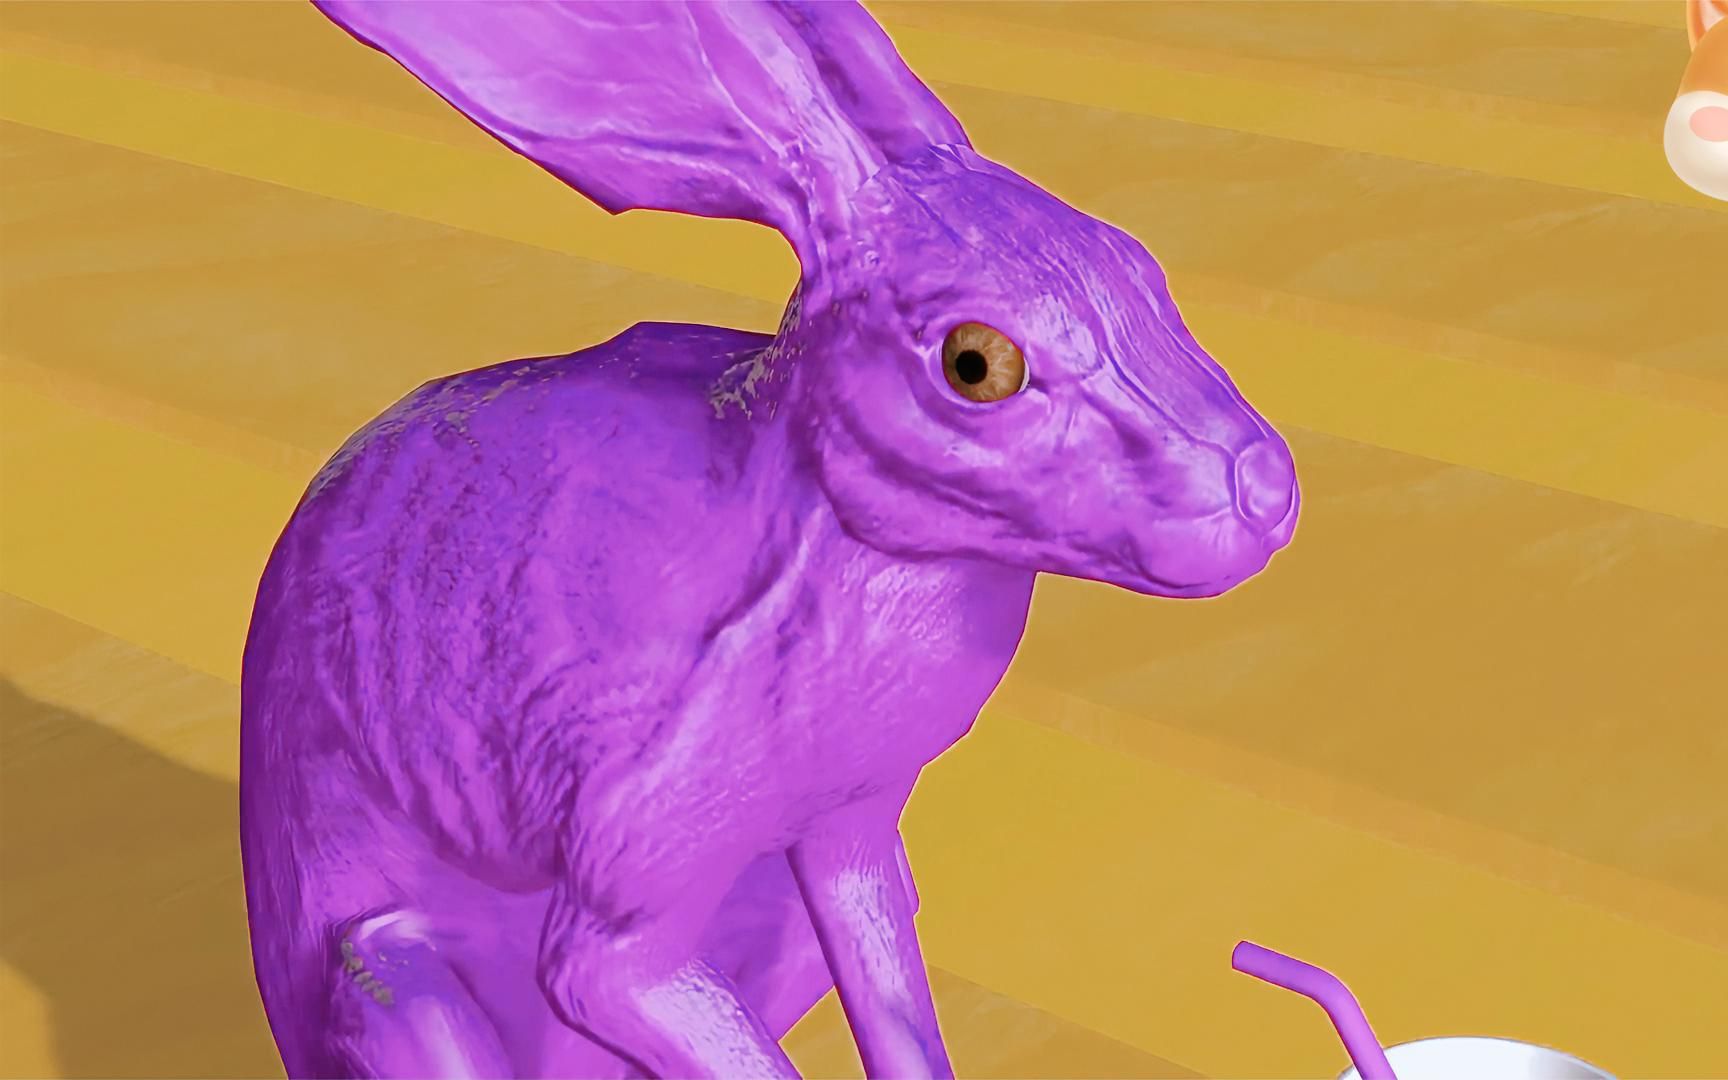 可爱的小兔子喝下神奇的魔法果汁,直接变身紫色小兔子,太可爱了